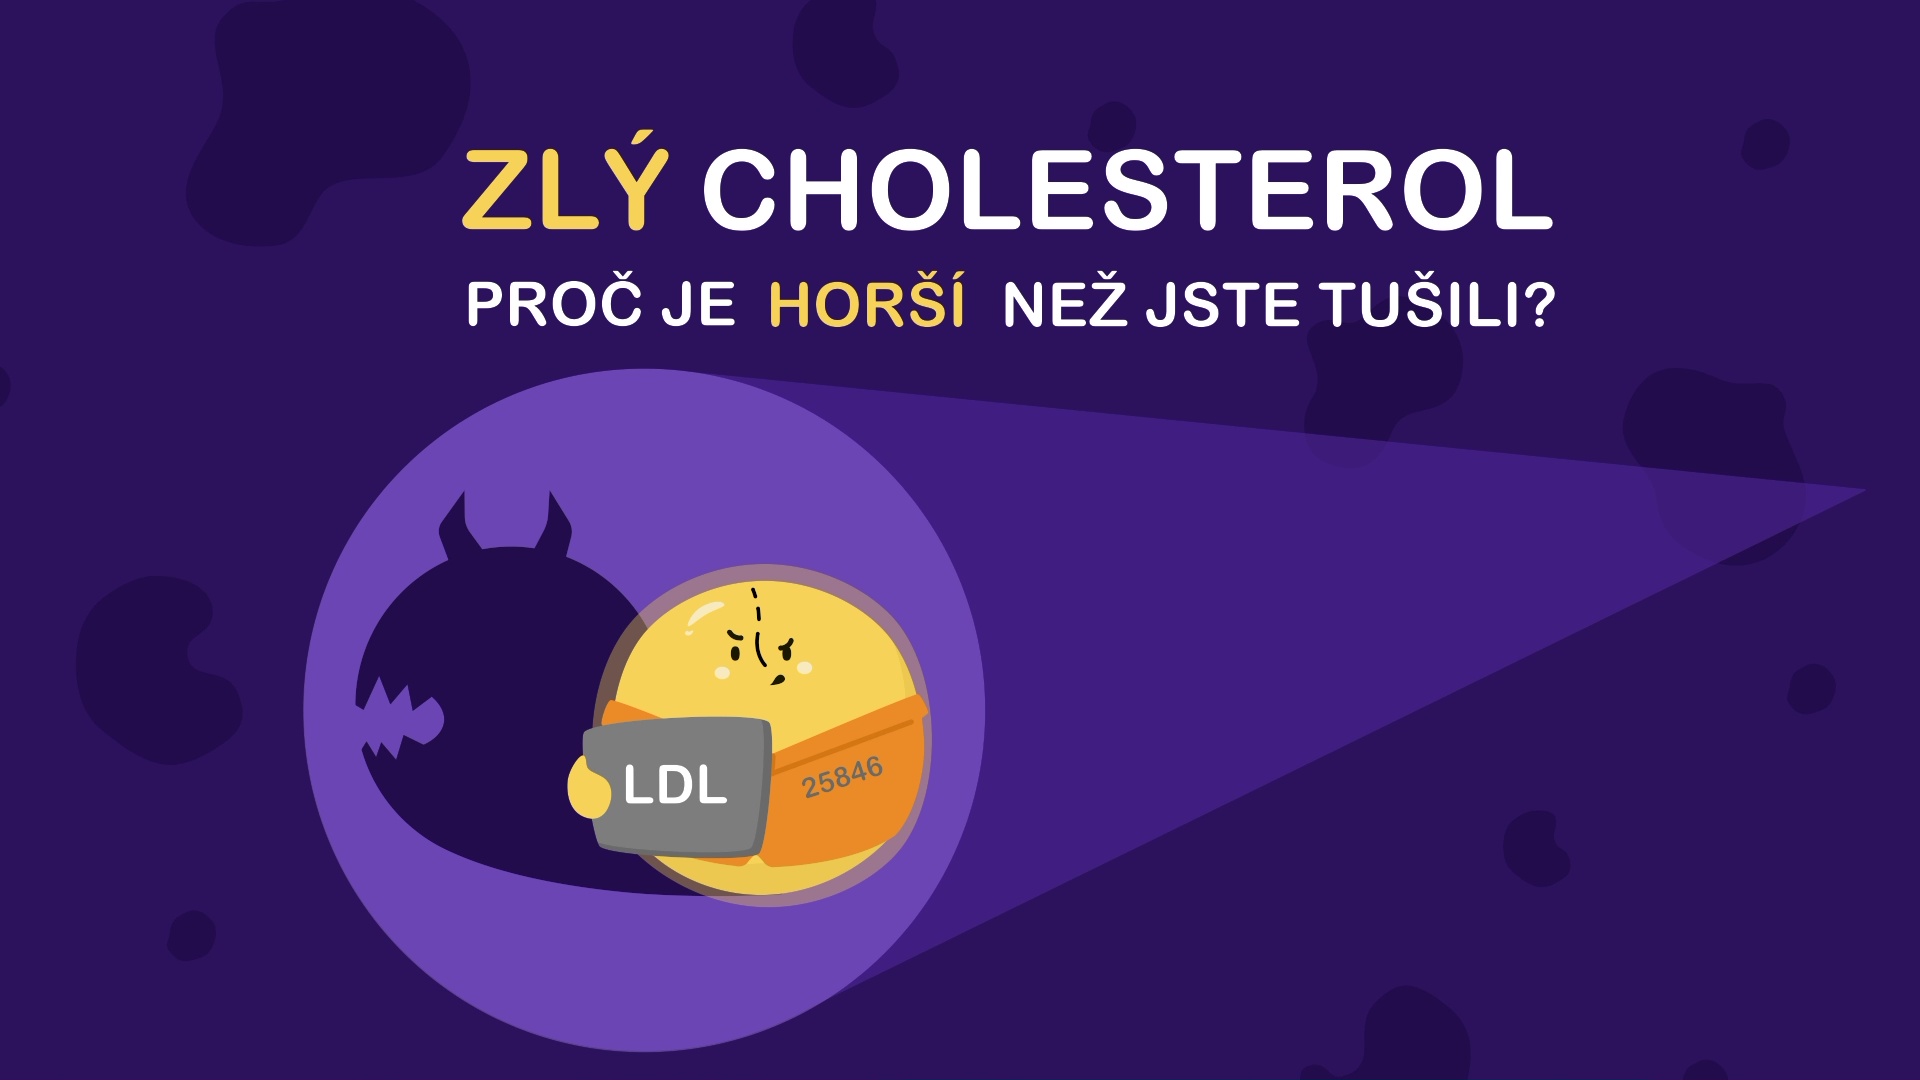 Cholesterol_02video_finalCZ.jpg